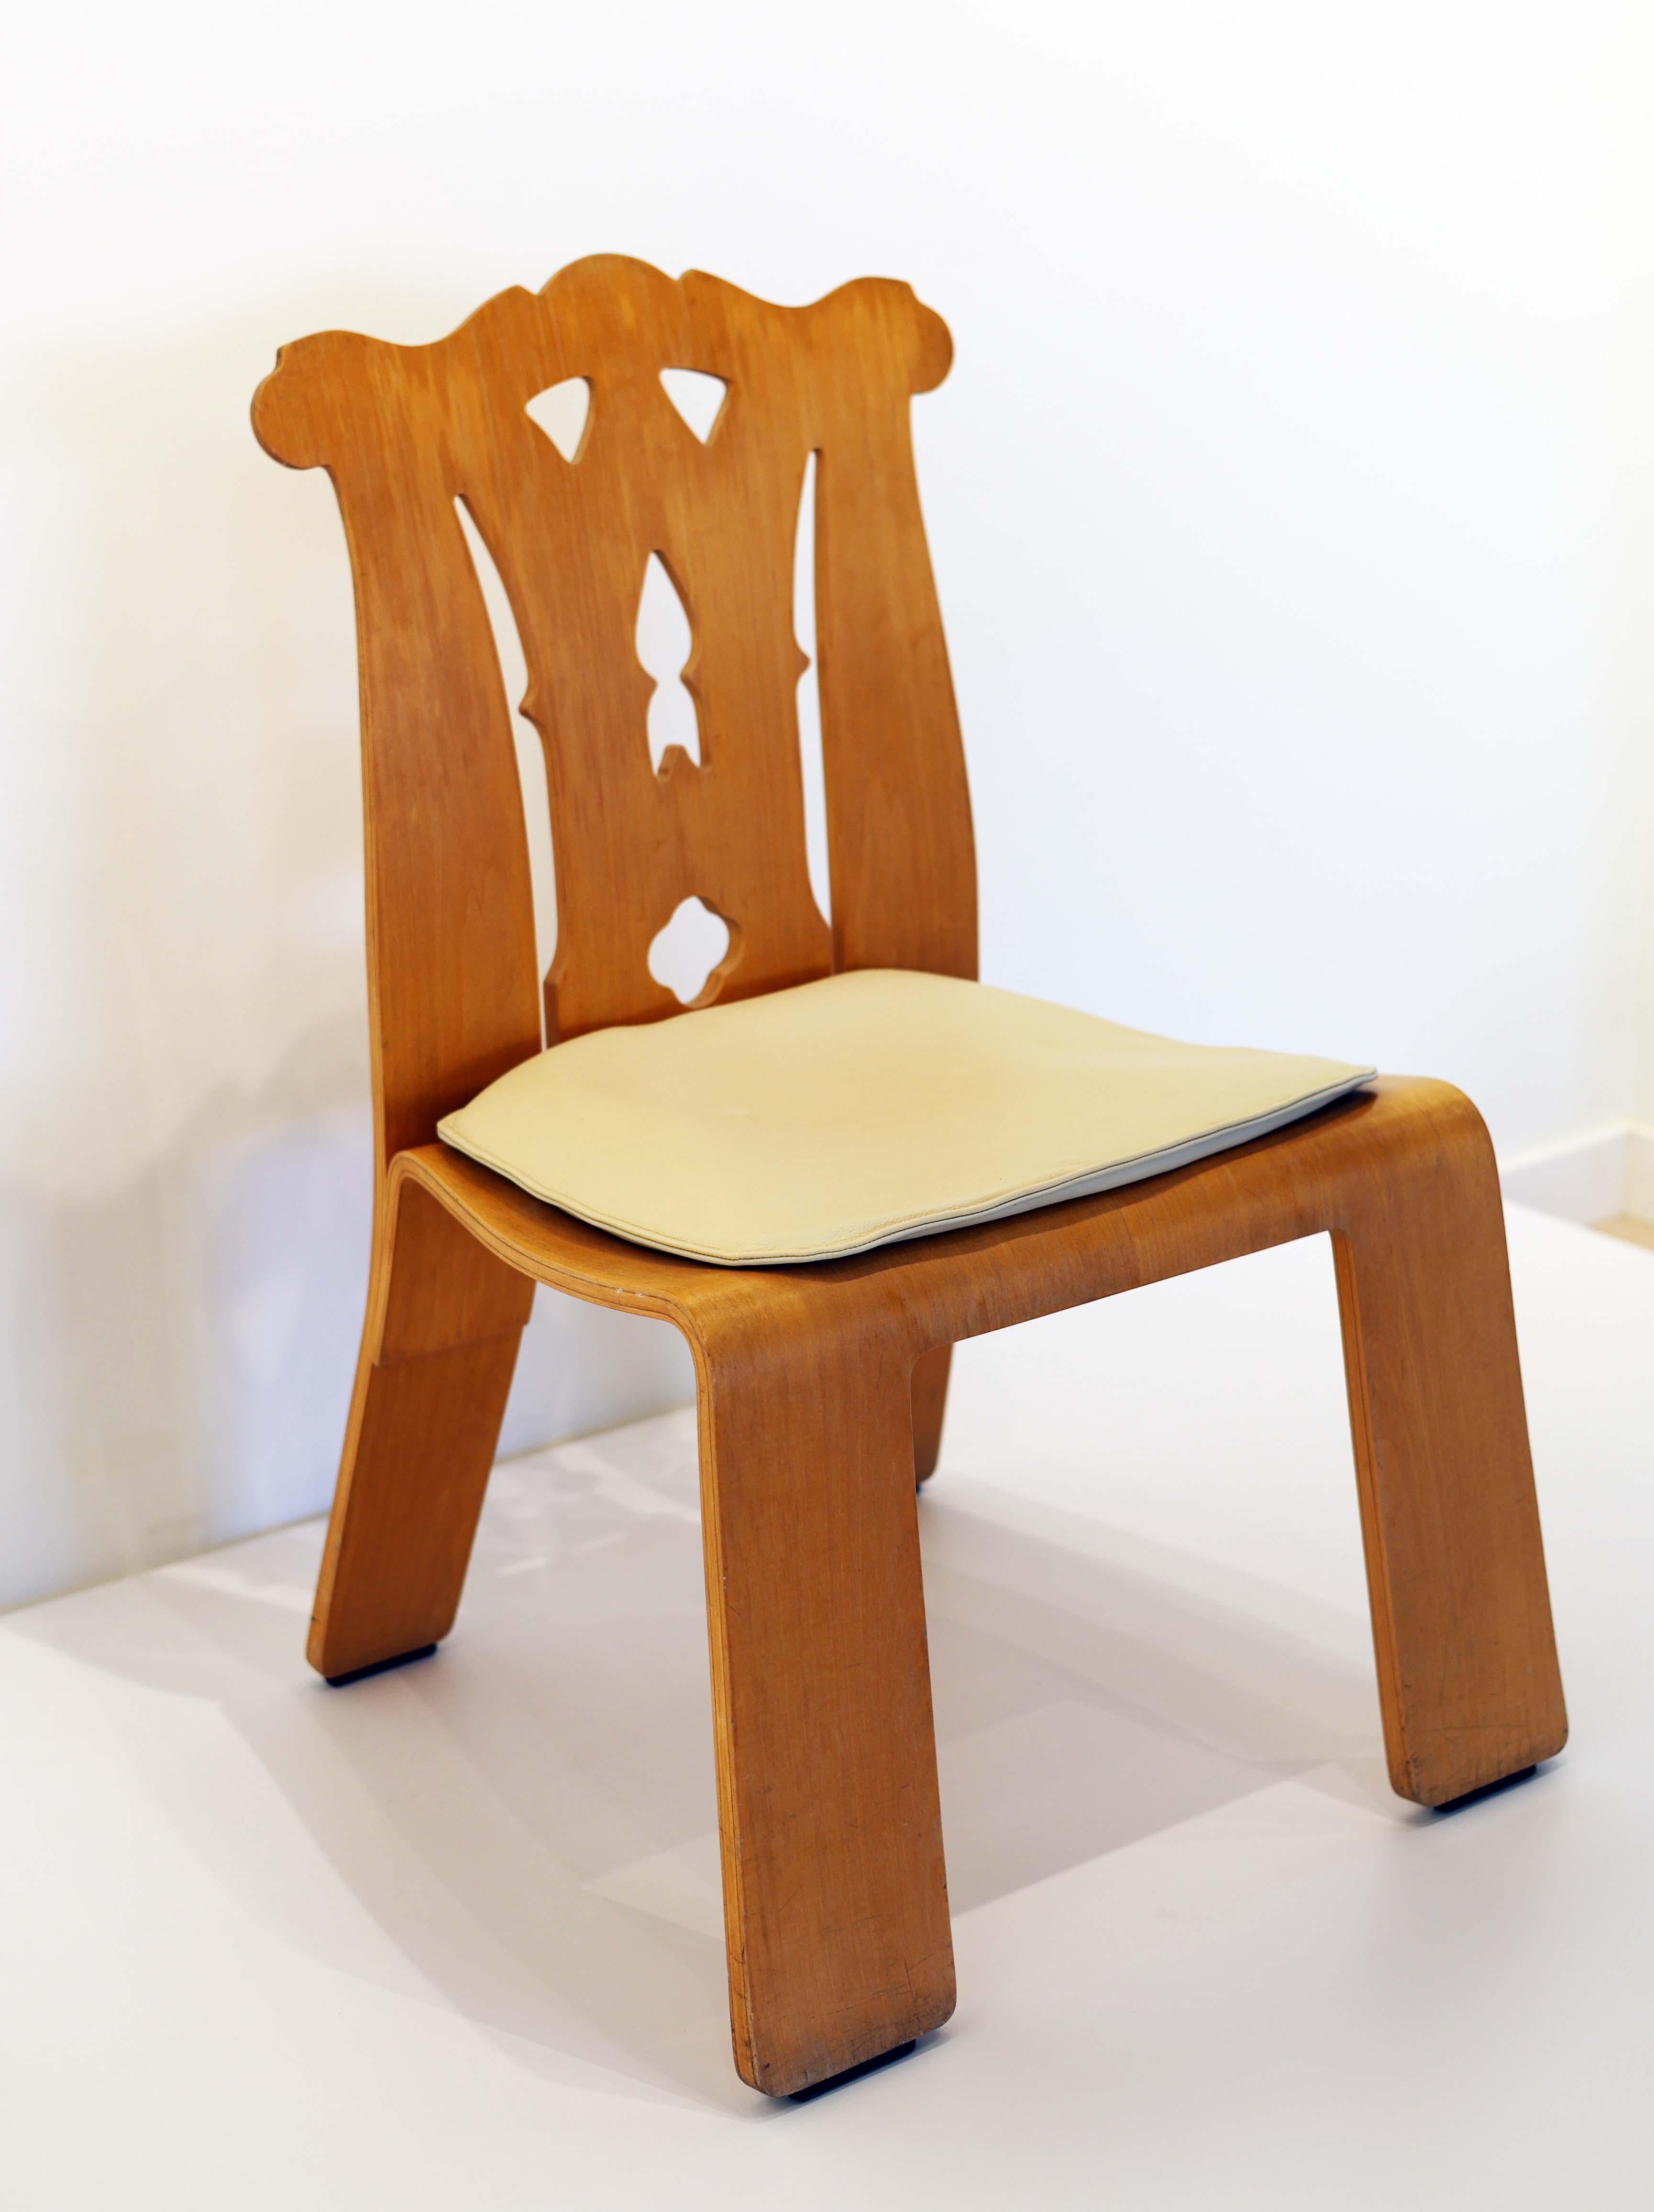 Veneer Robert Venturi Chippendale Chairs - Knoll 1984